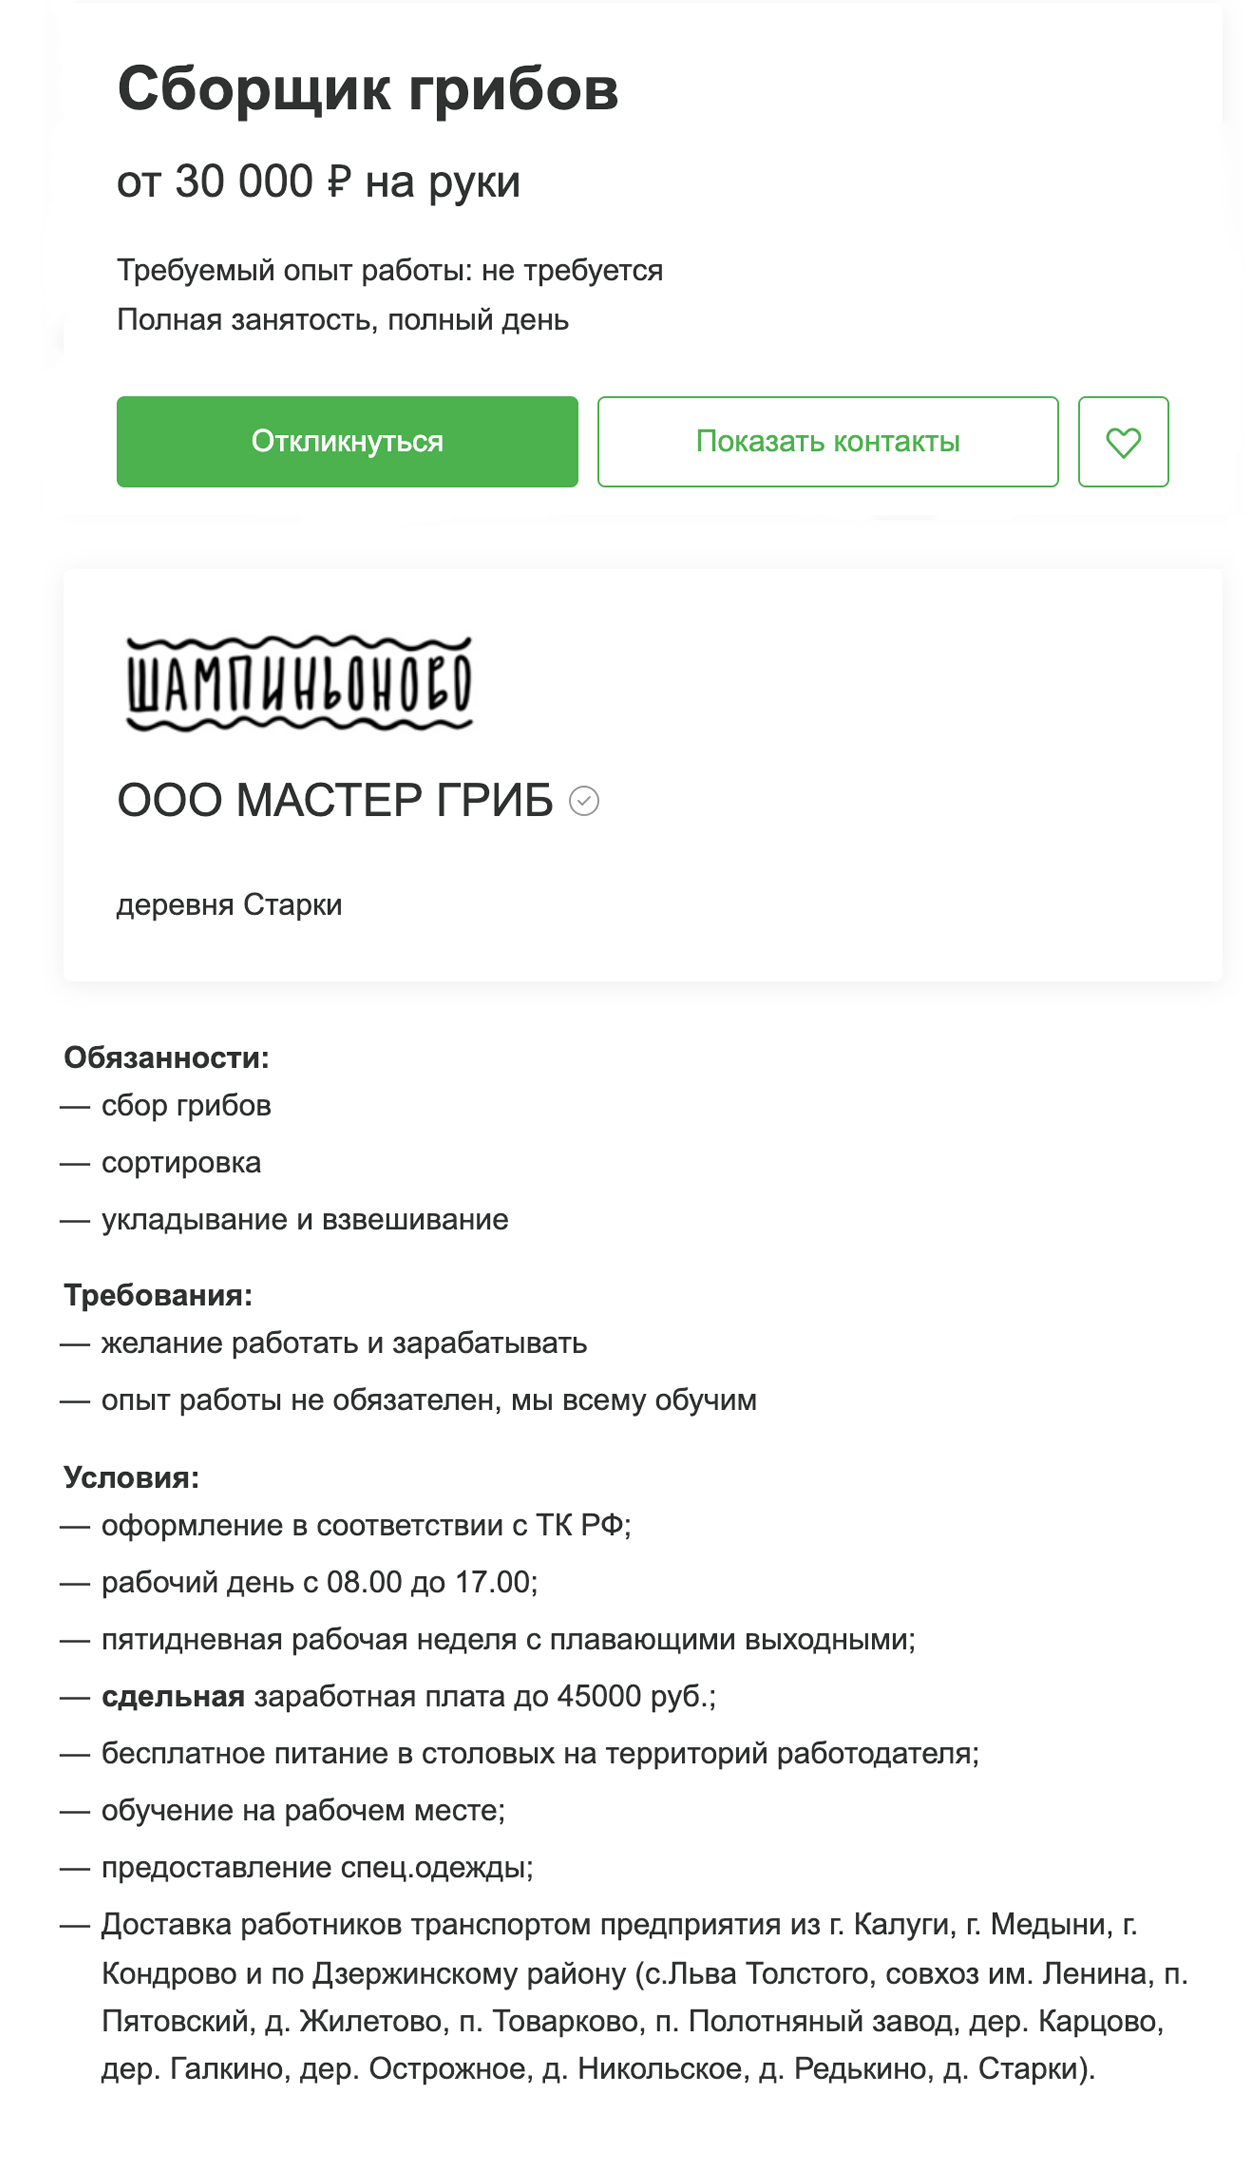 В России за похожую работу — сбор грибов — предлагают от 30 000 ₽ за месяц работы. При этом смены длятся 9 часов. Источник: hh.ru